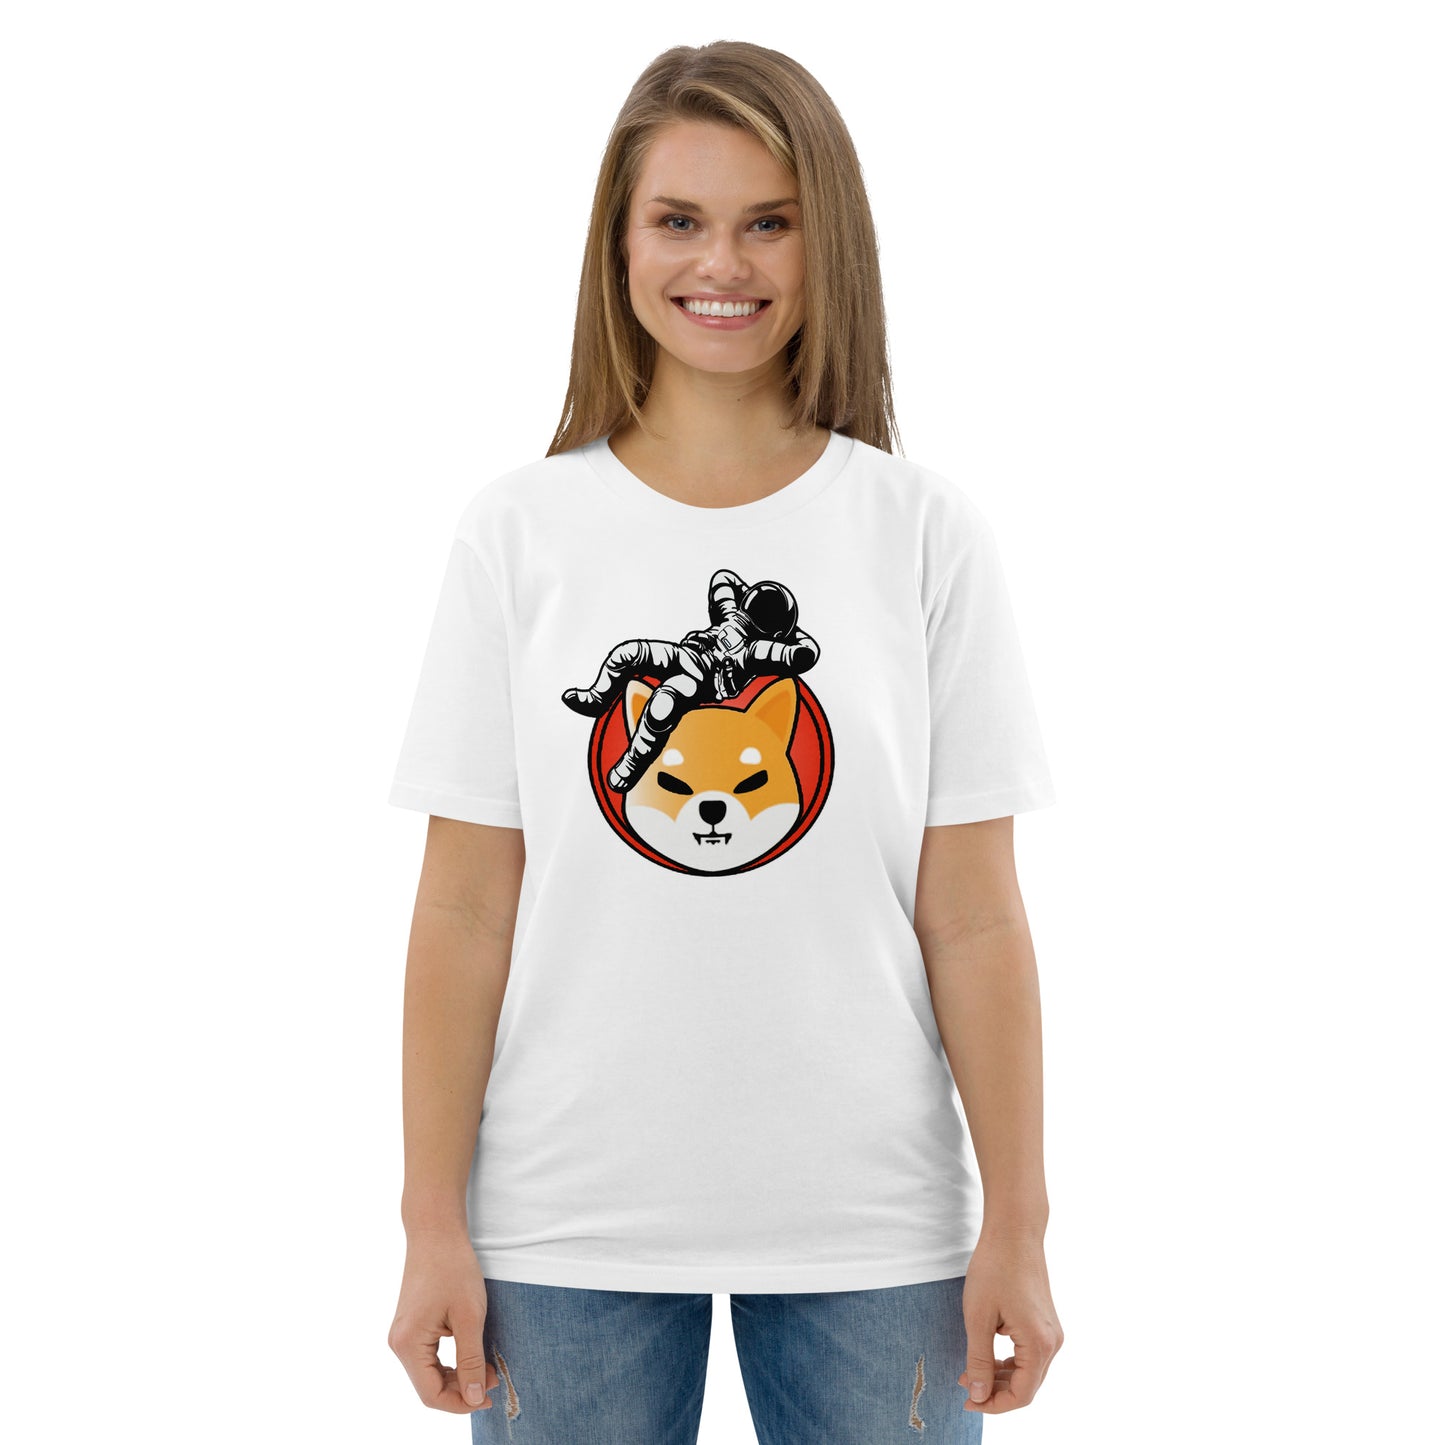 Shiba Inu To The Moon Women's Organic Cotton T-Shirt